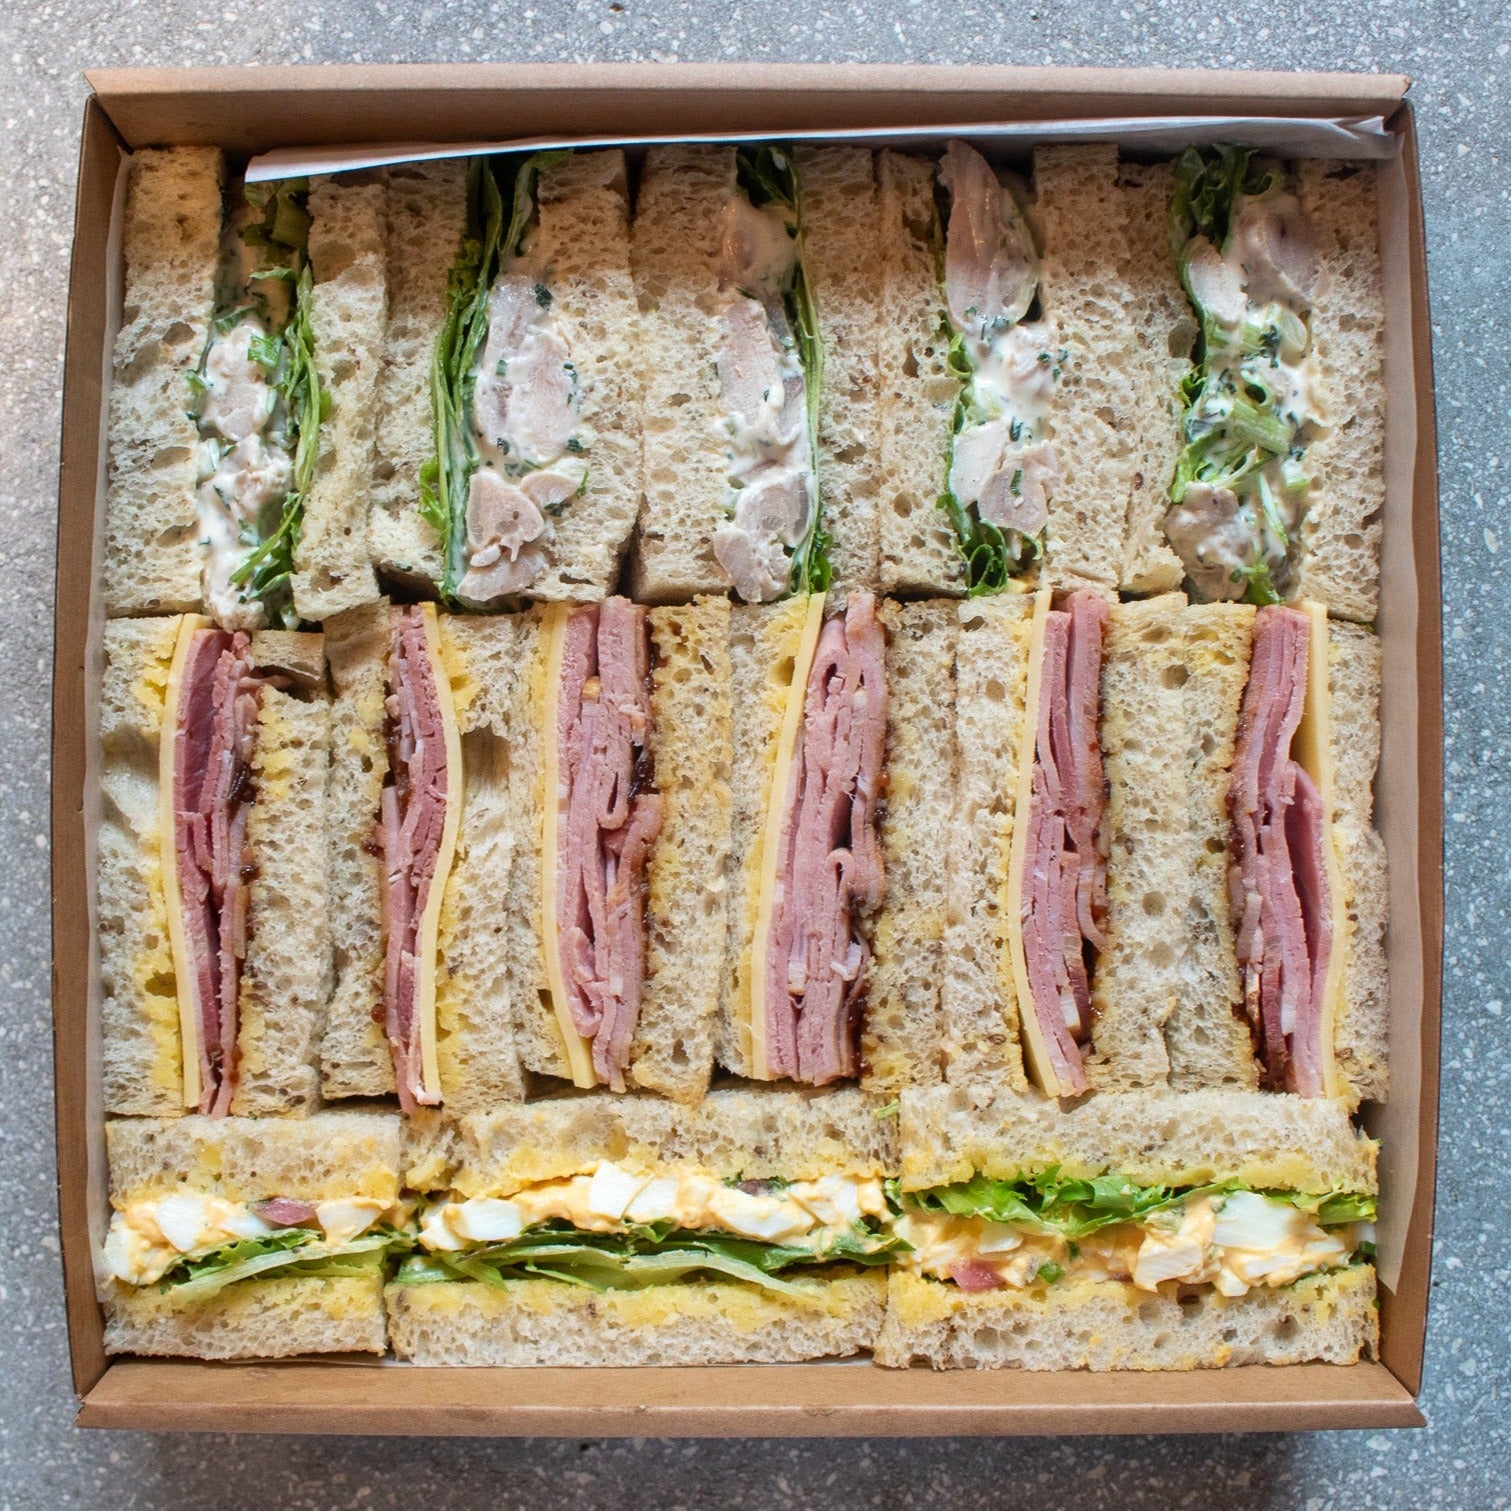 Mixed sandwich box